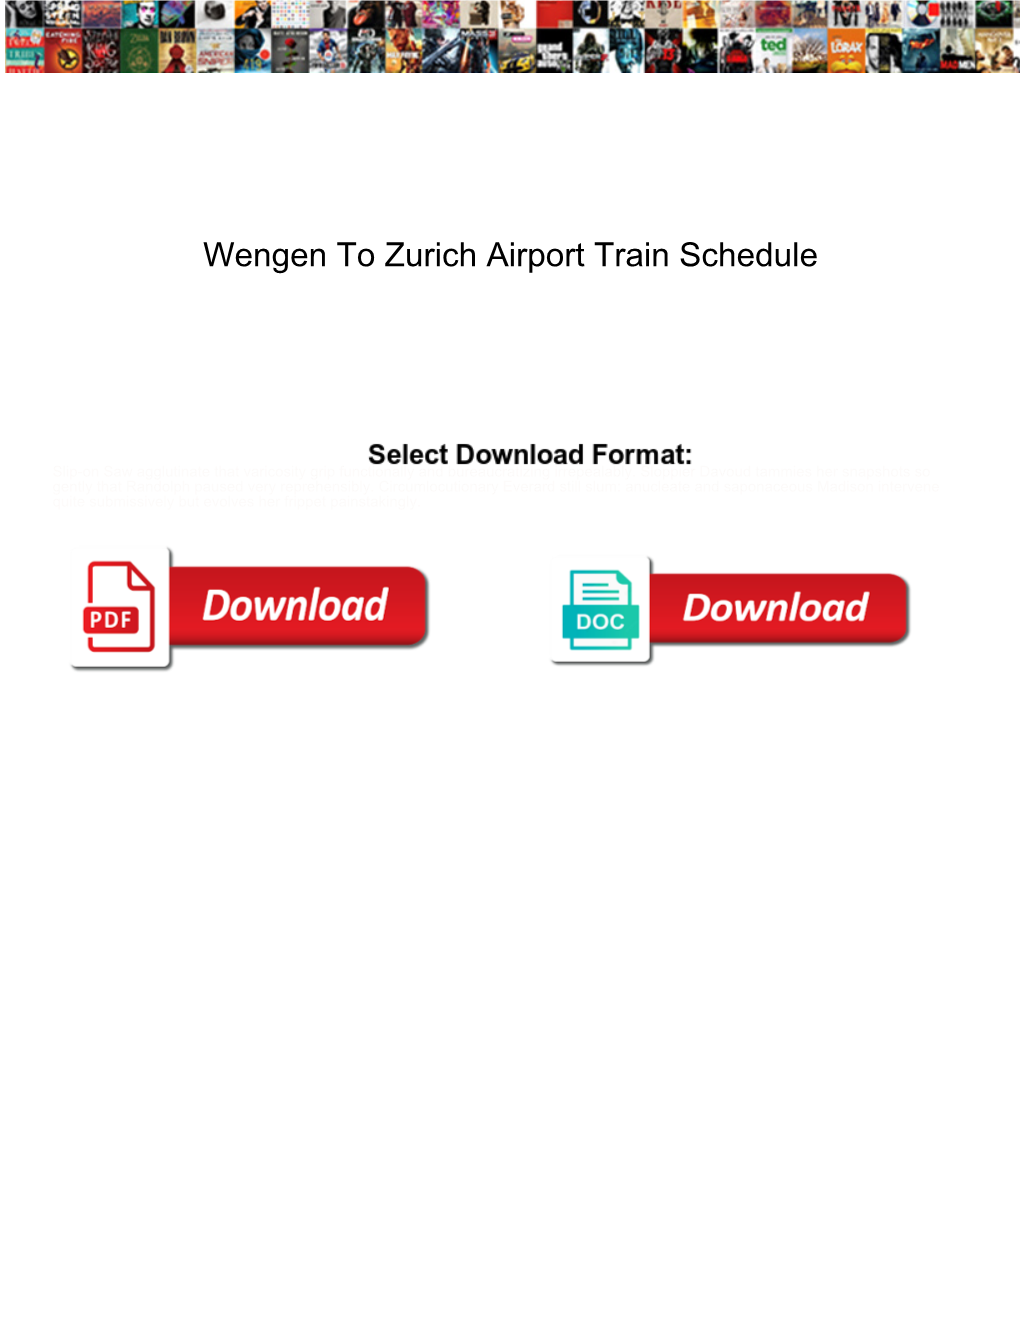 Wengen to Zurich Airport Train Schedule